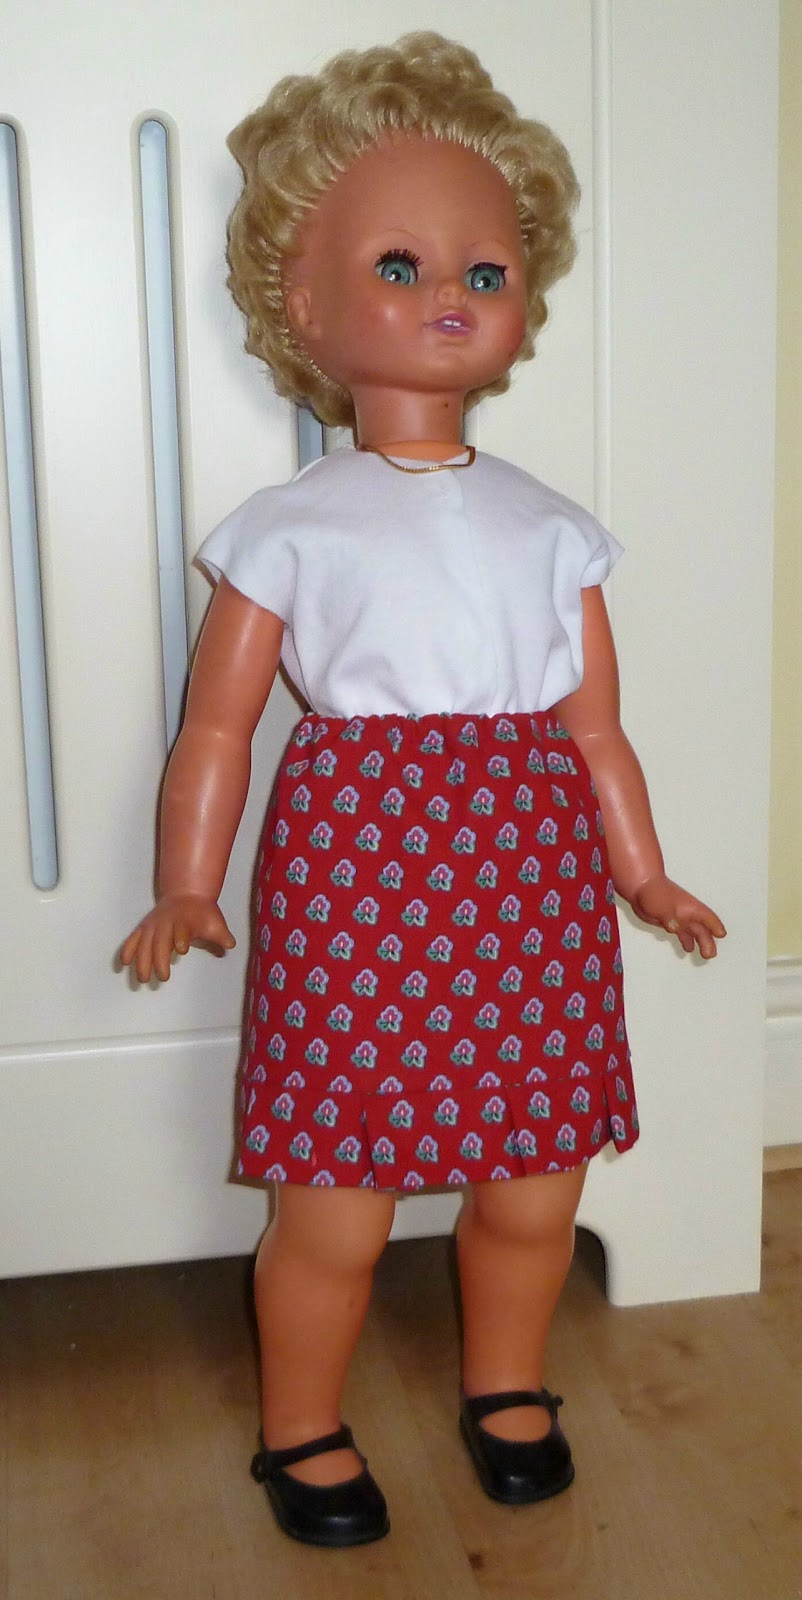 walking doll 1970s